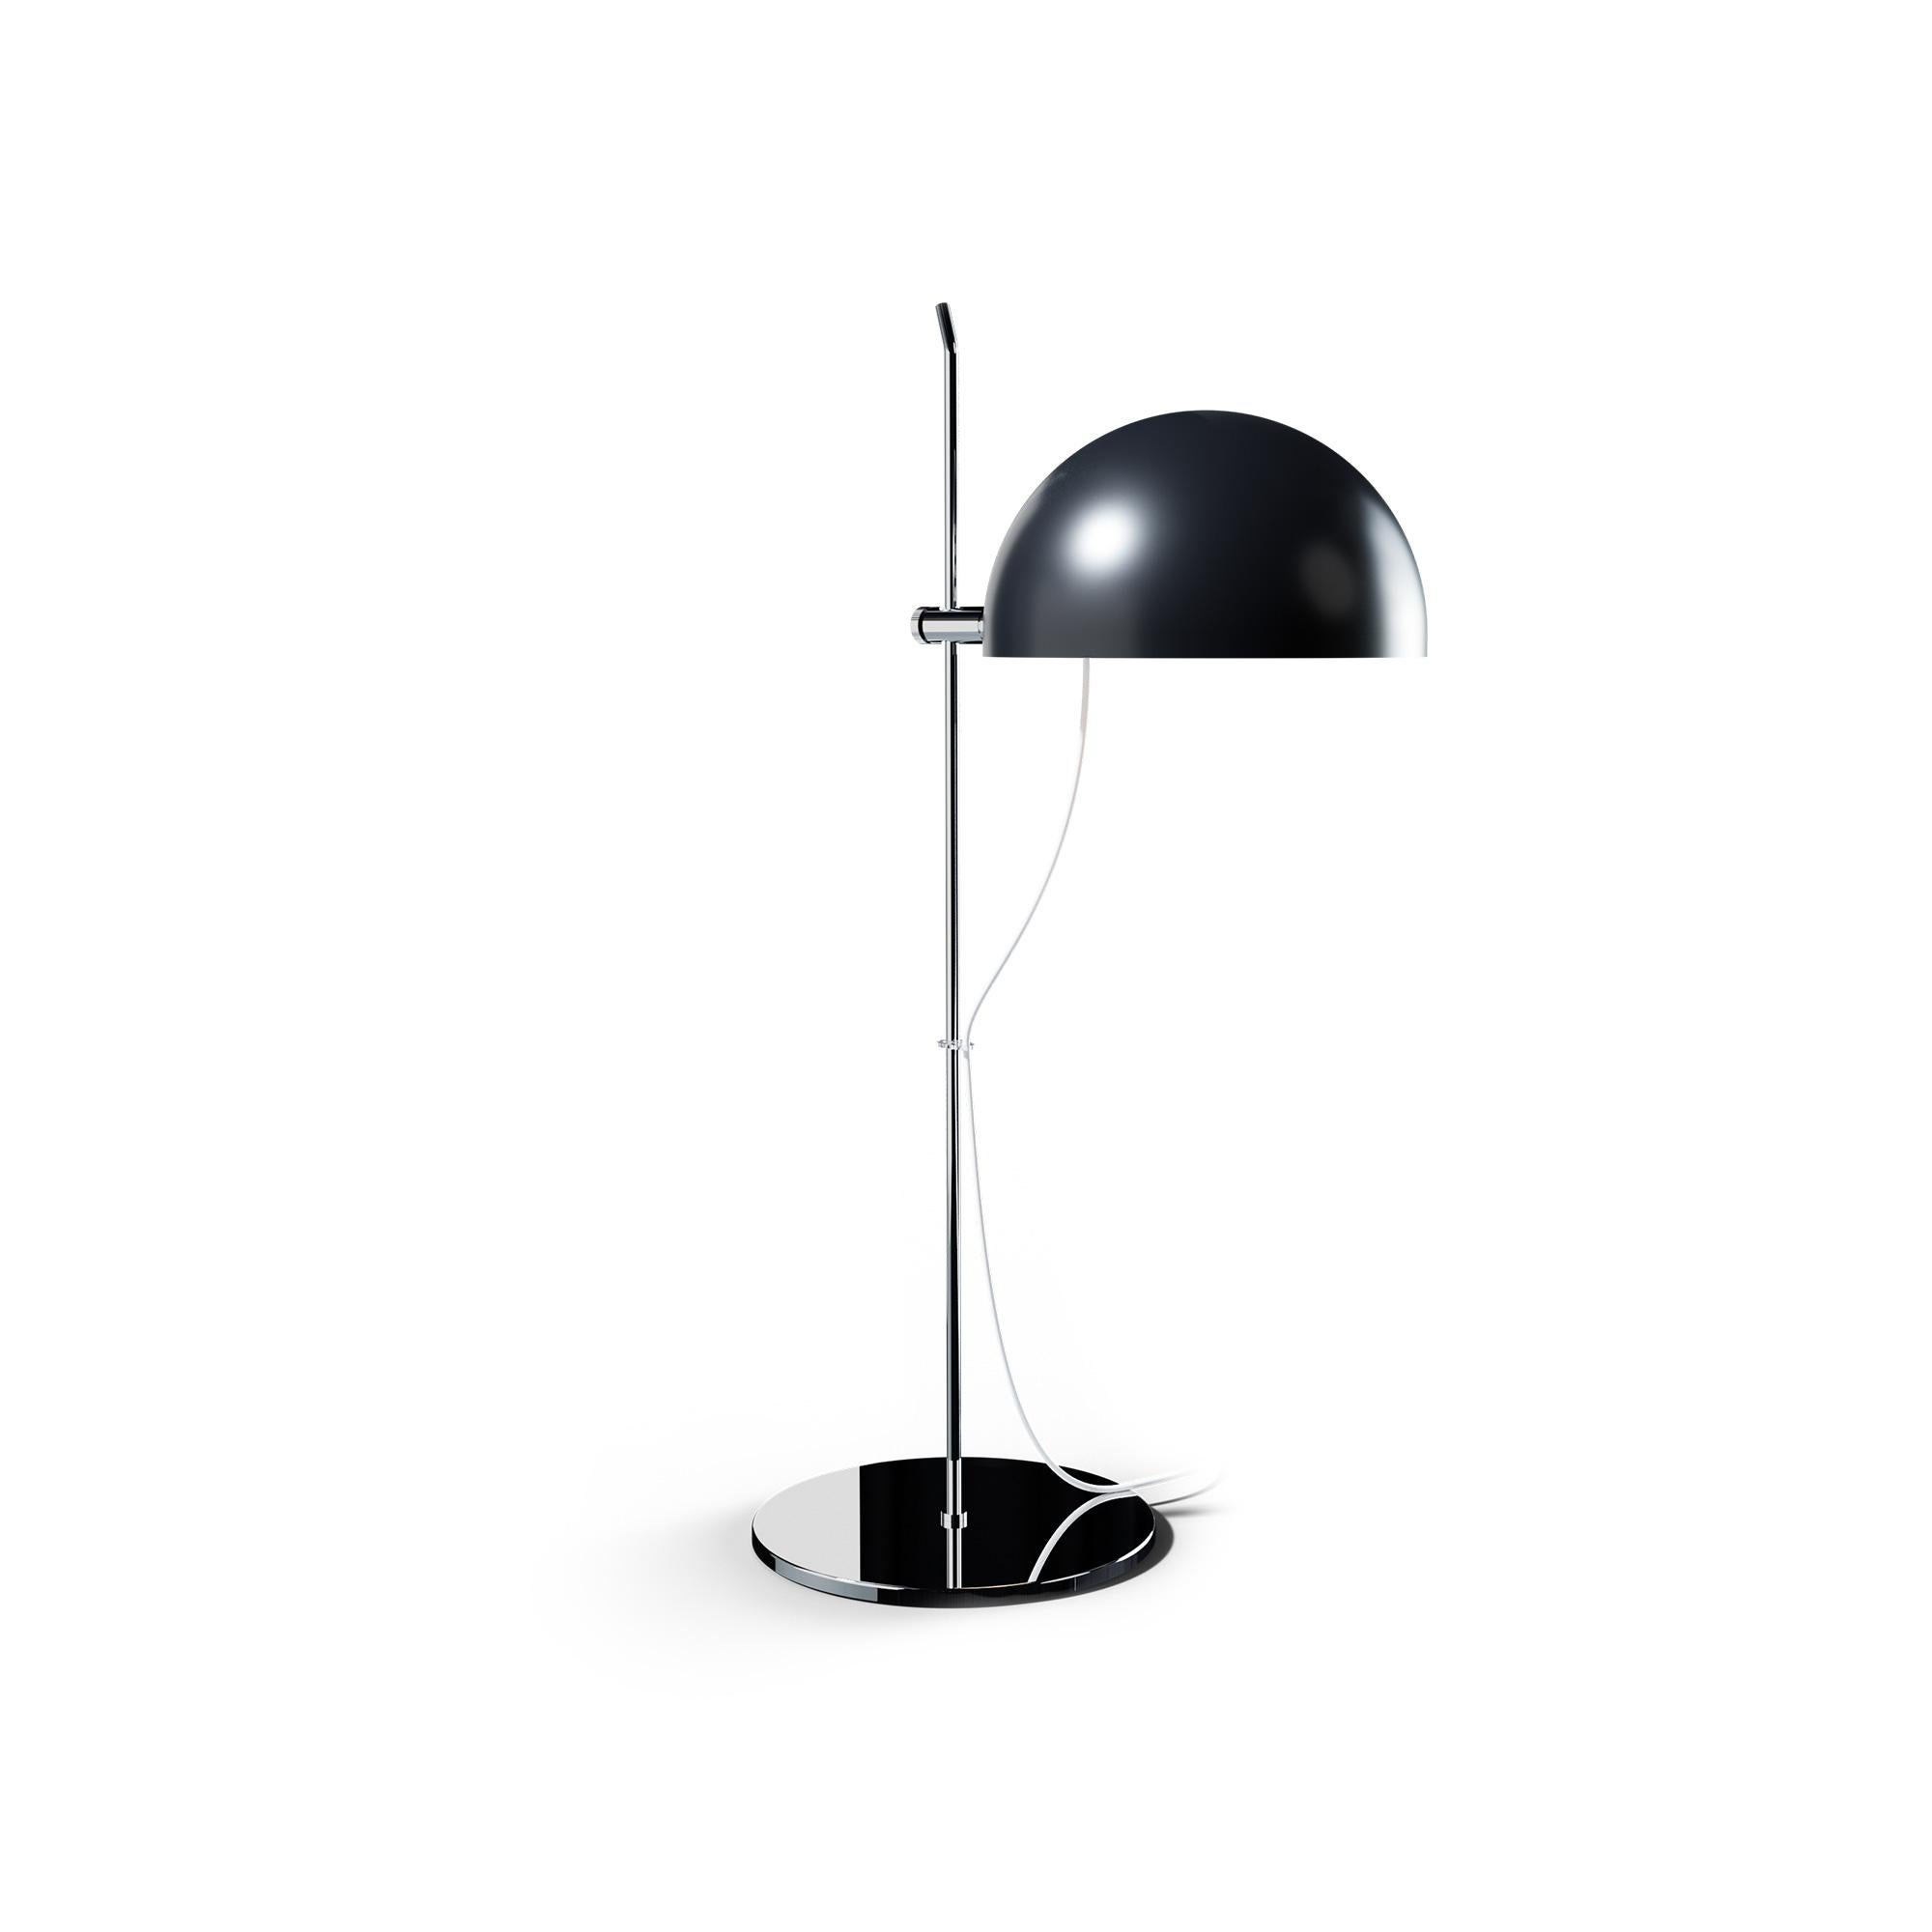 Alain Richard 'A21' Desk Lamp in Chrome for Disderot For Sale 2